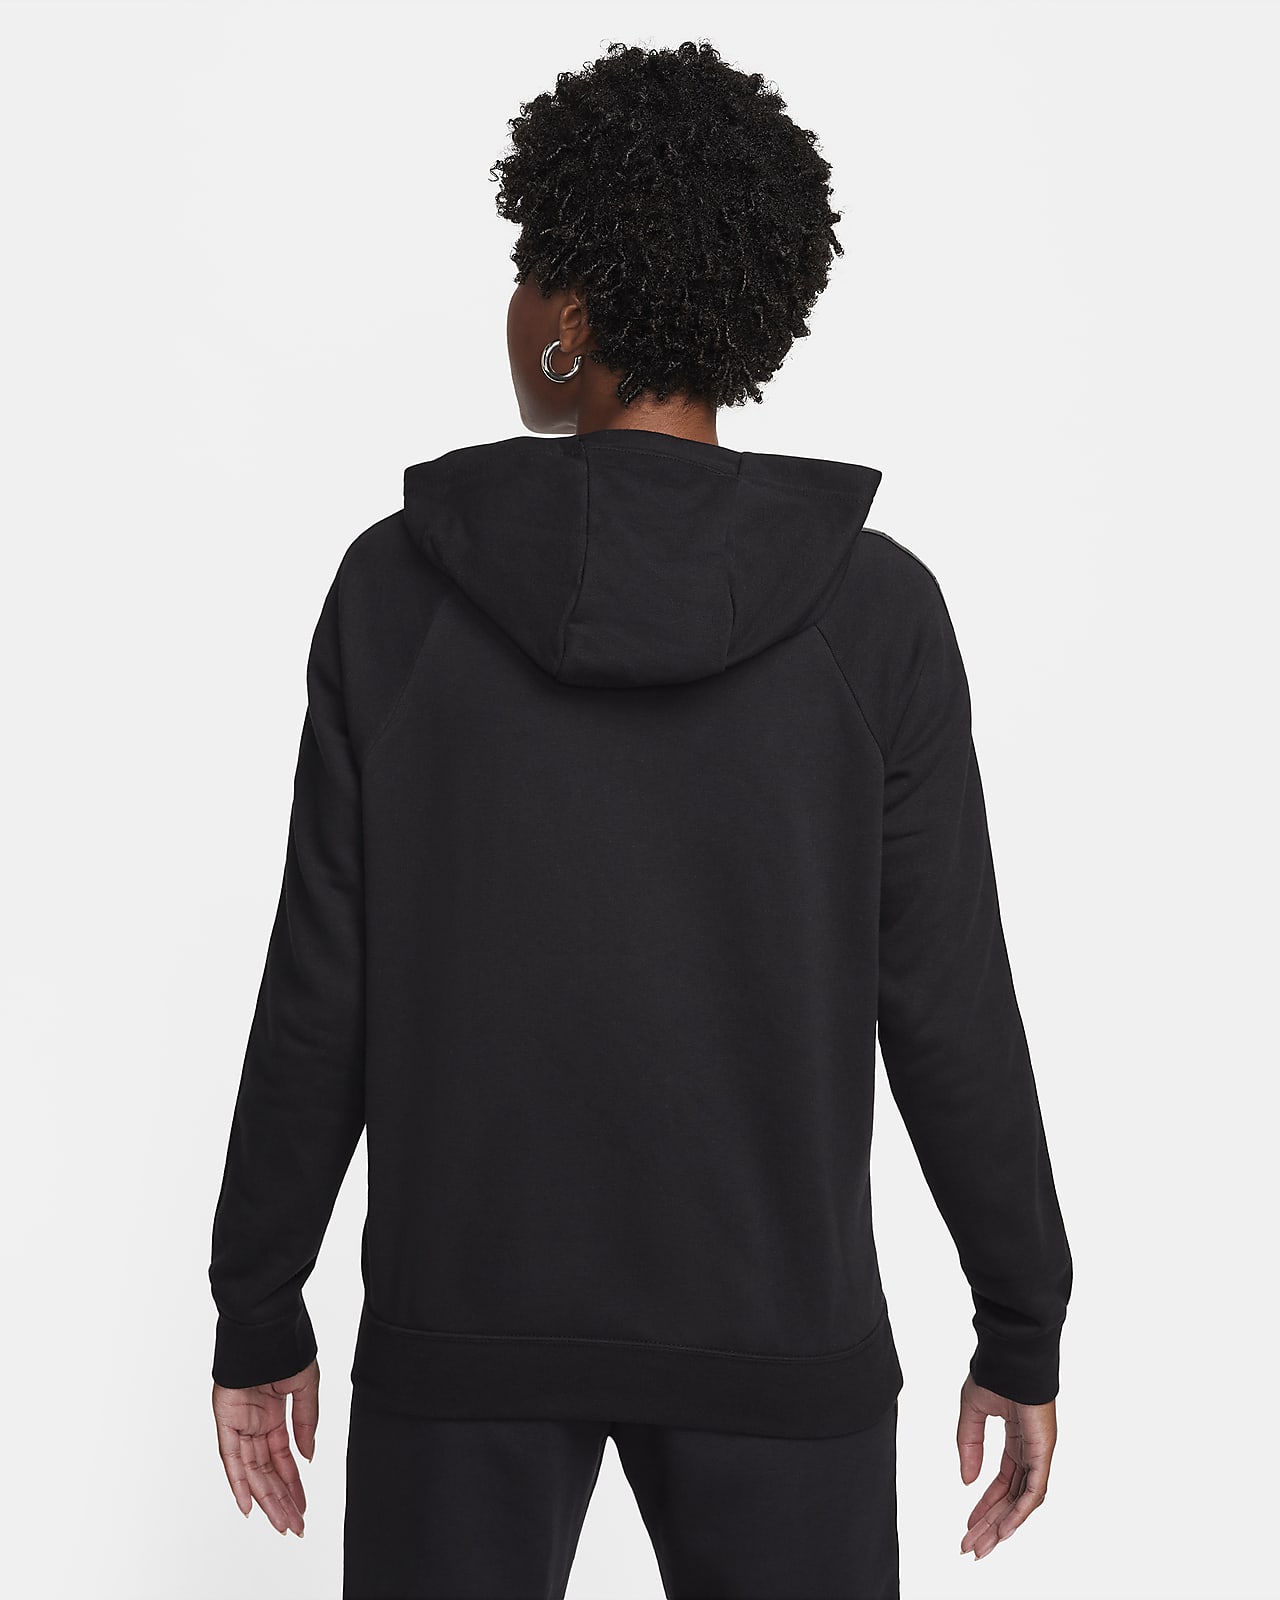 Nike Sportswear Essential Women's FullZip Hoodie Jacket Black RRP £44.95